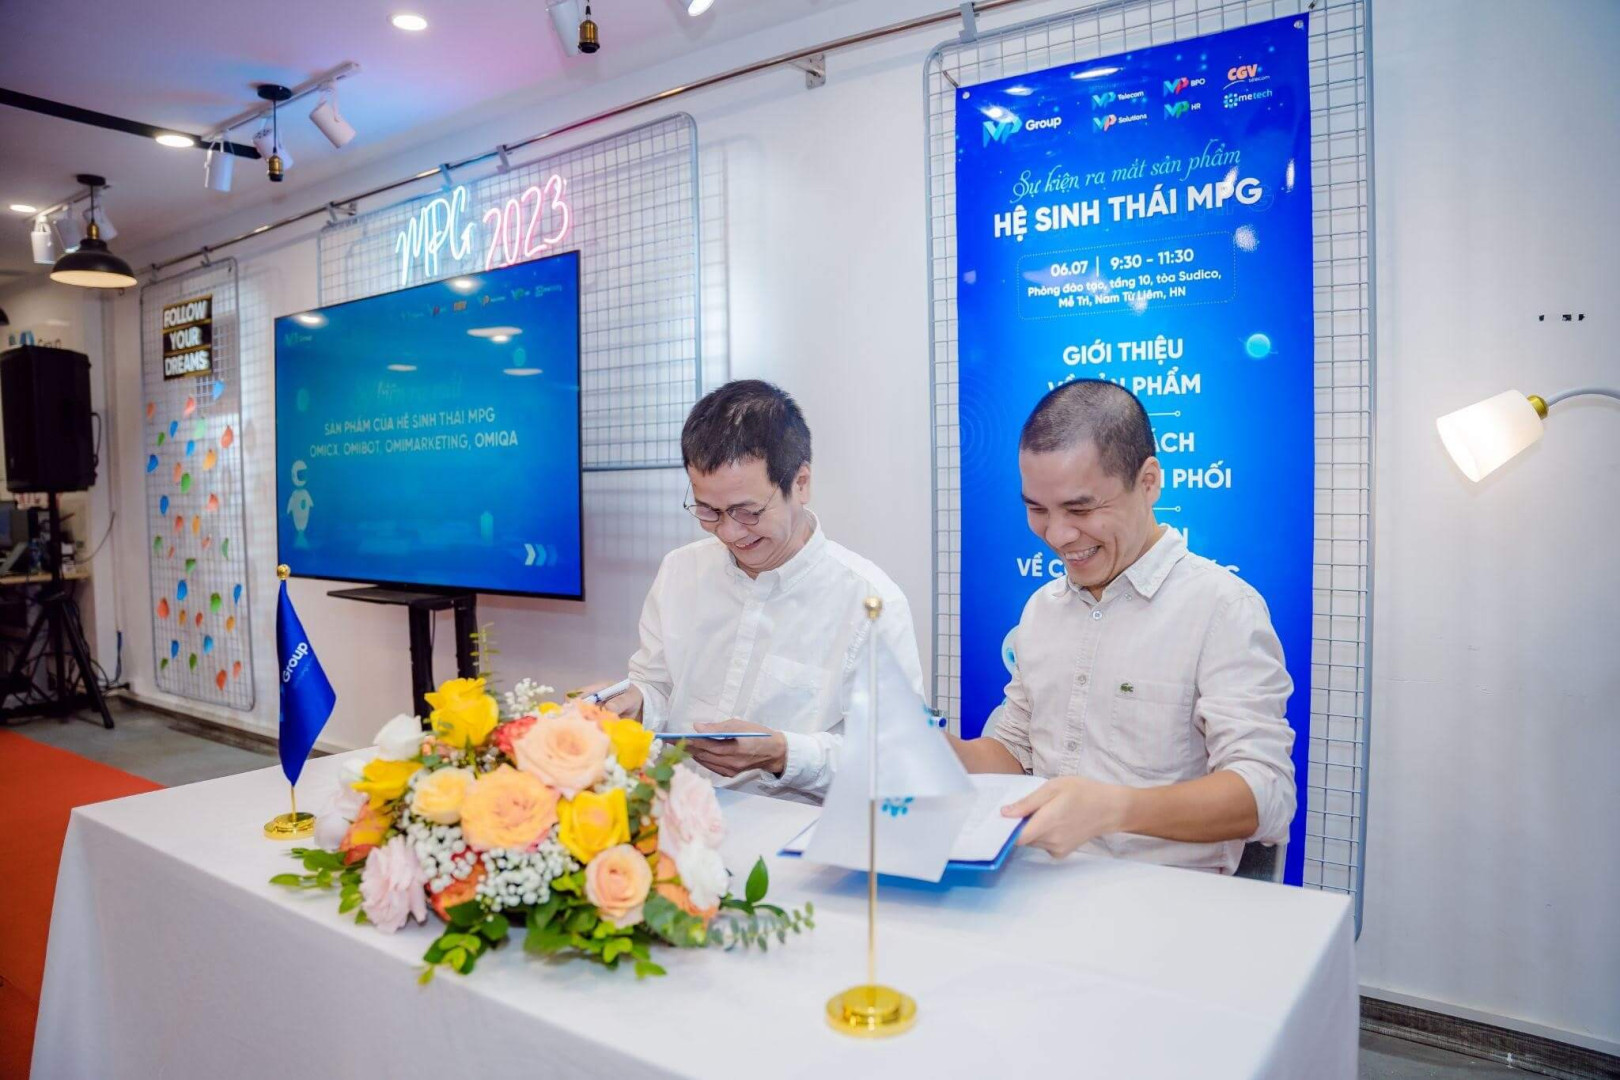 Ông Nguyễn Việt Trung - Tổng Giám Đốc MPG (phía bên trái) và ông Cao Huy Văn - Giám Đốc MeTech (phía bên phải) đang thực hiện lễ ký kết 